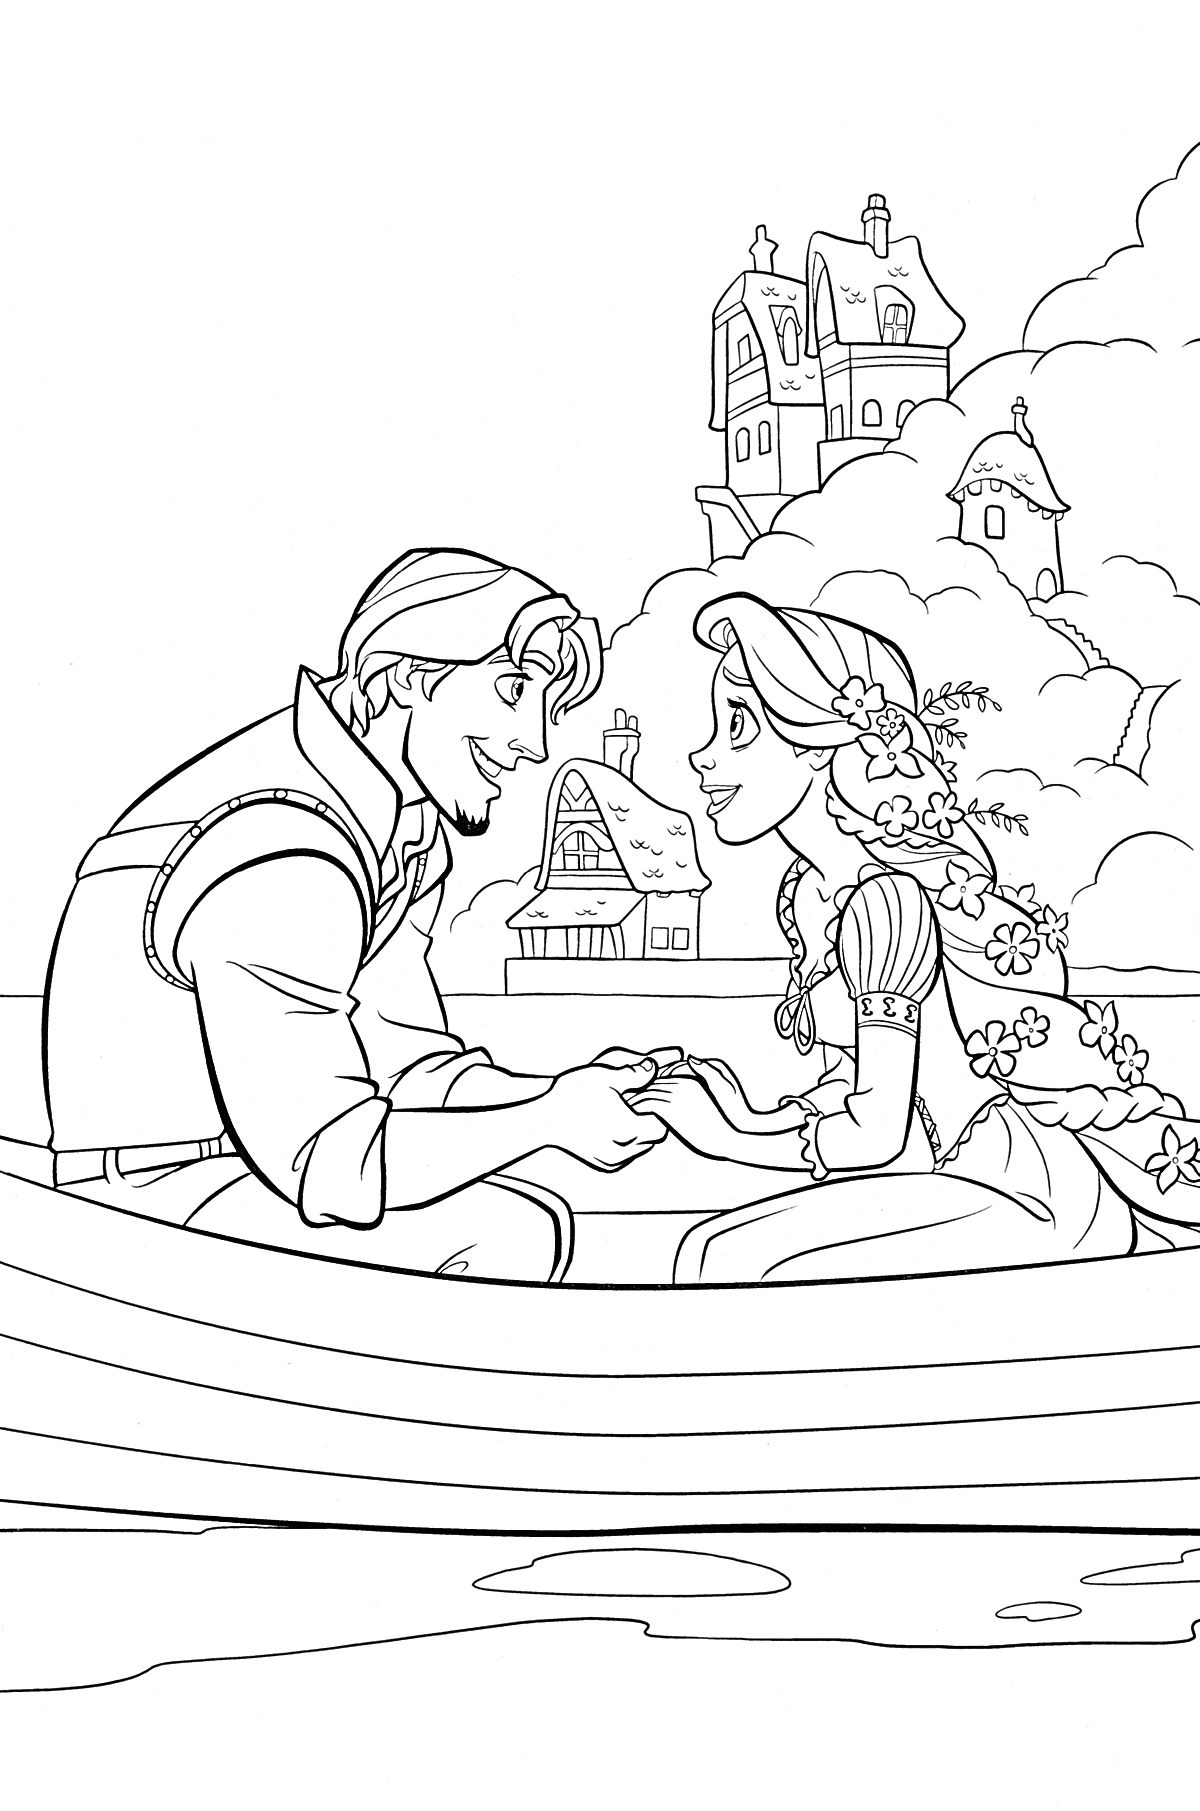 Рапунцель и молодой человек в лодке на фоне замка и домов